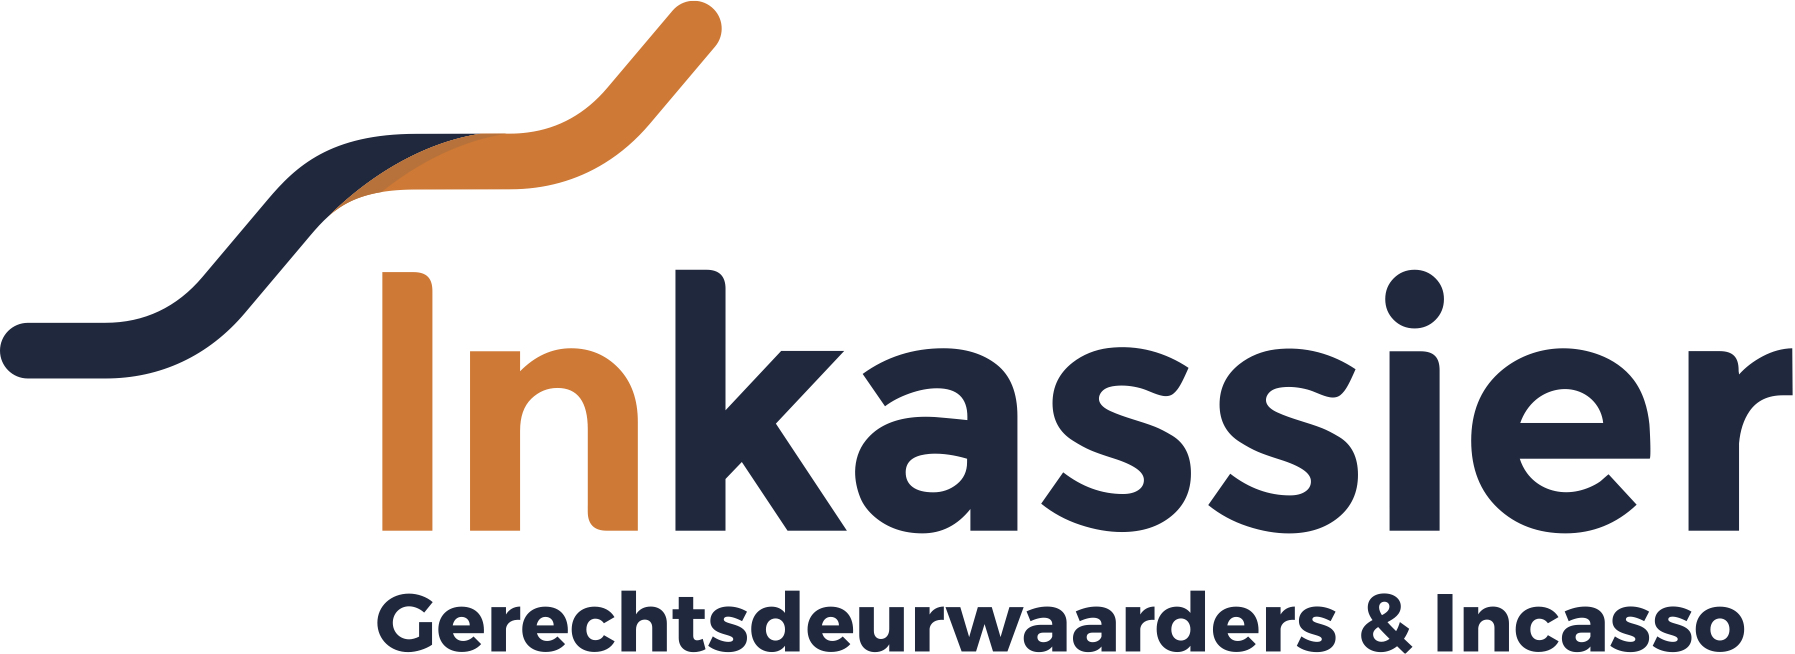 Inkassier.nl